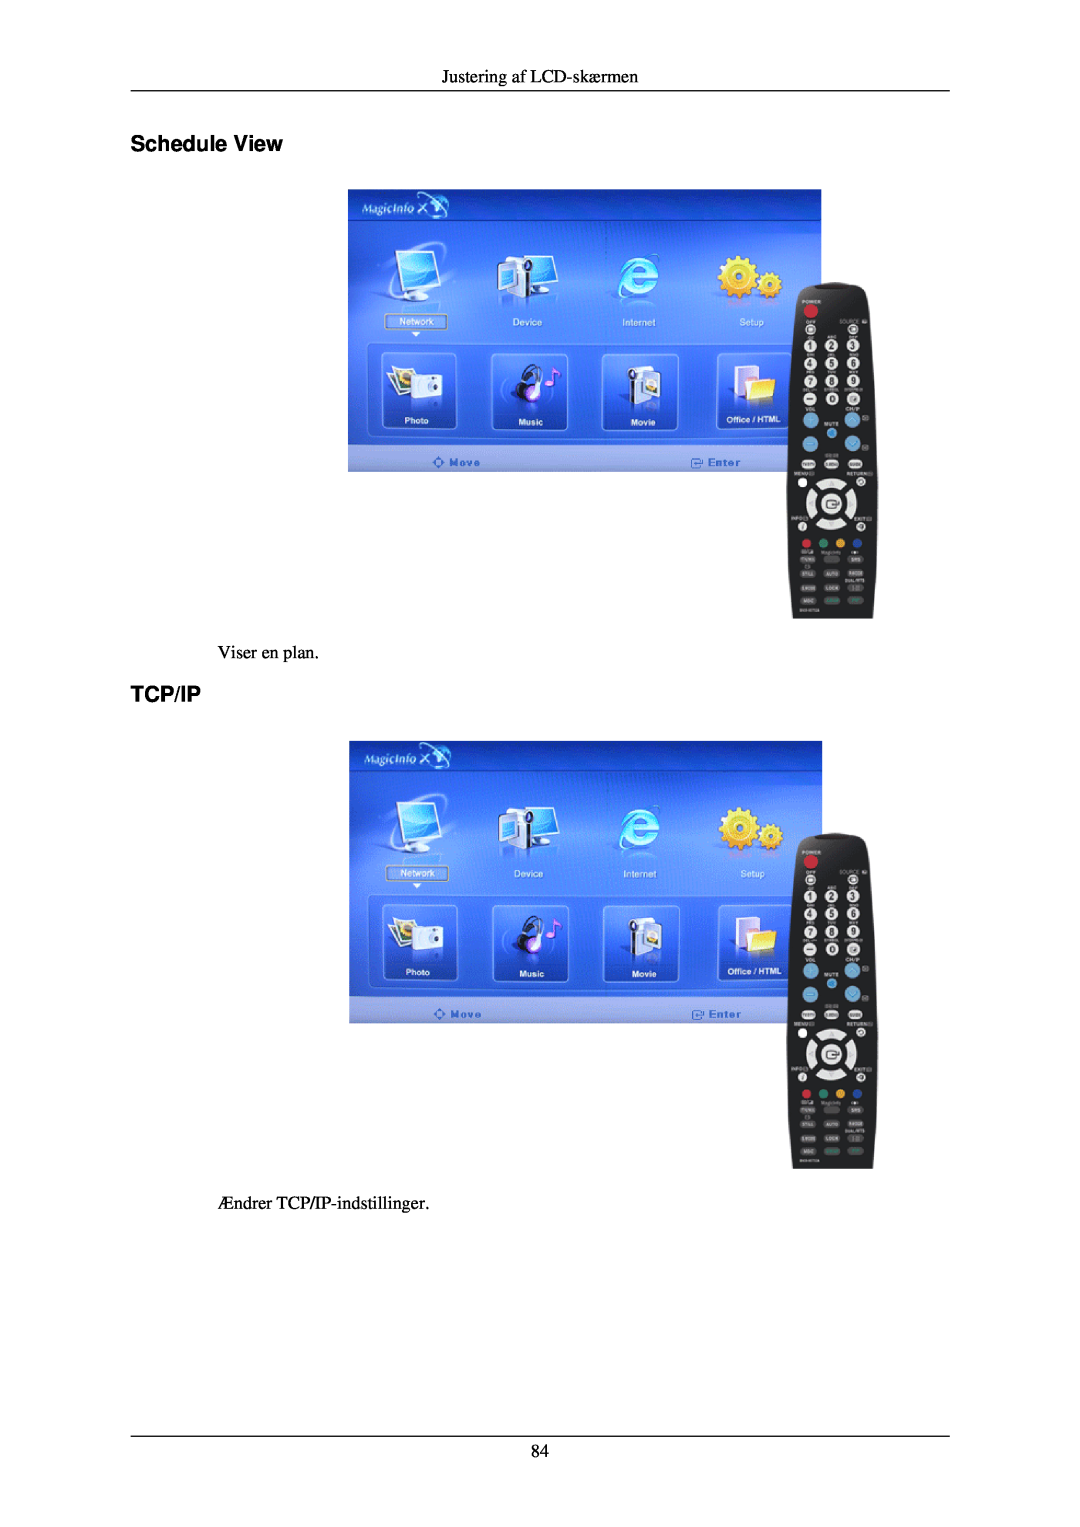 Samsung LH40TCUMBC/EN manual Schedule View, Tcp/Ip, Justering af LCD-skærmen, Viser en plan, Ændrer TCP/IP-indstillinger 